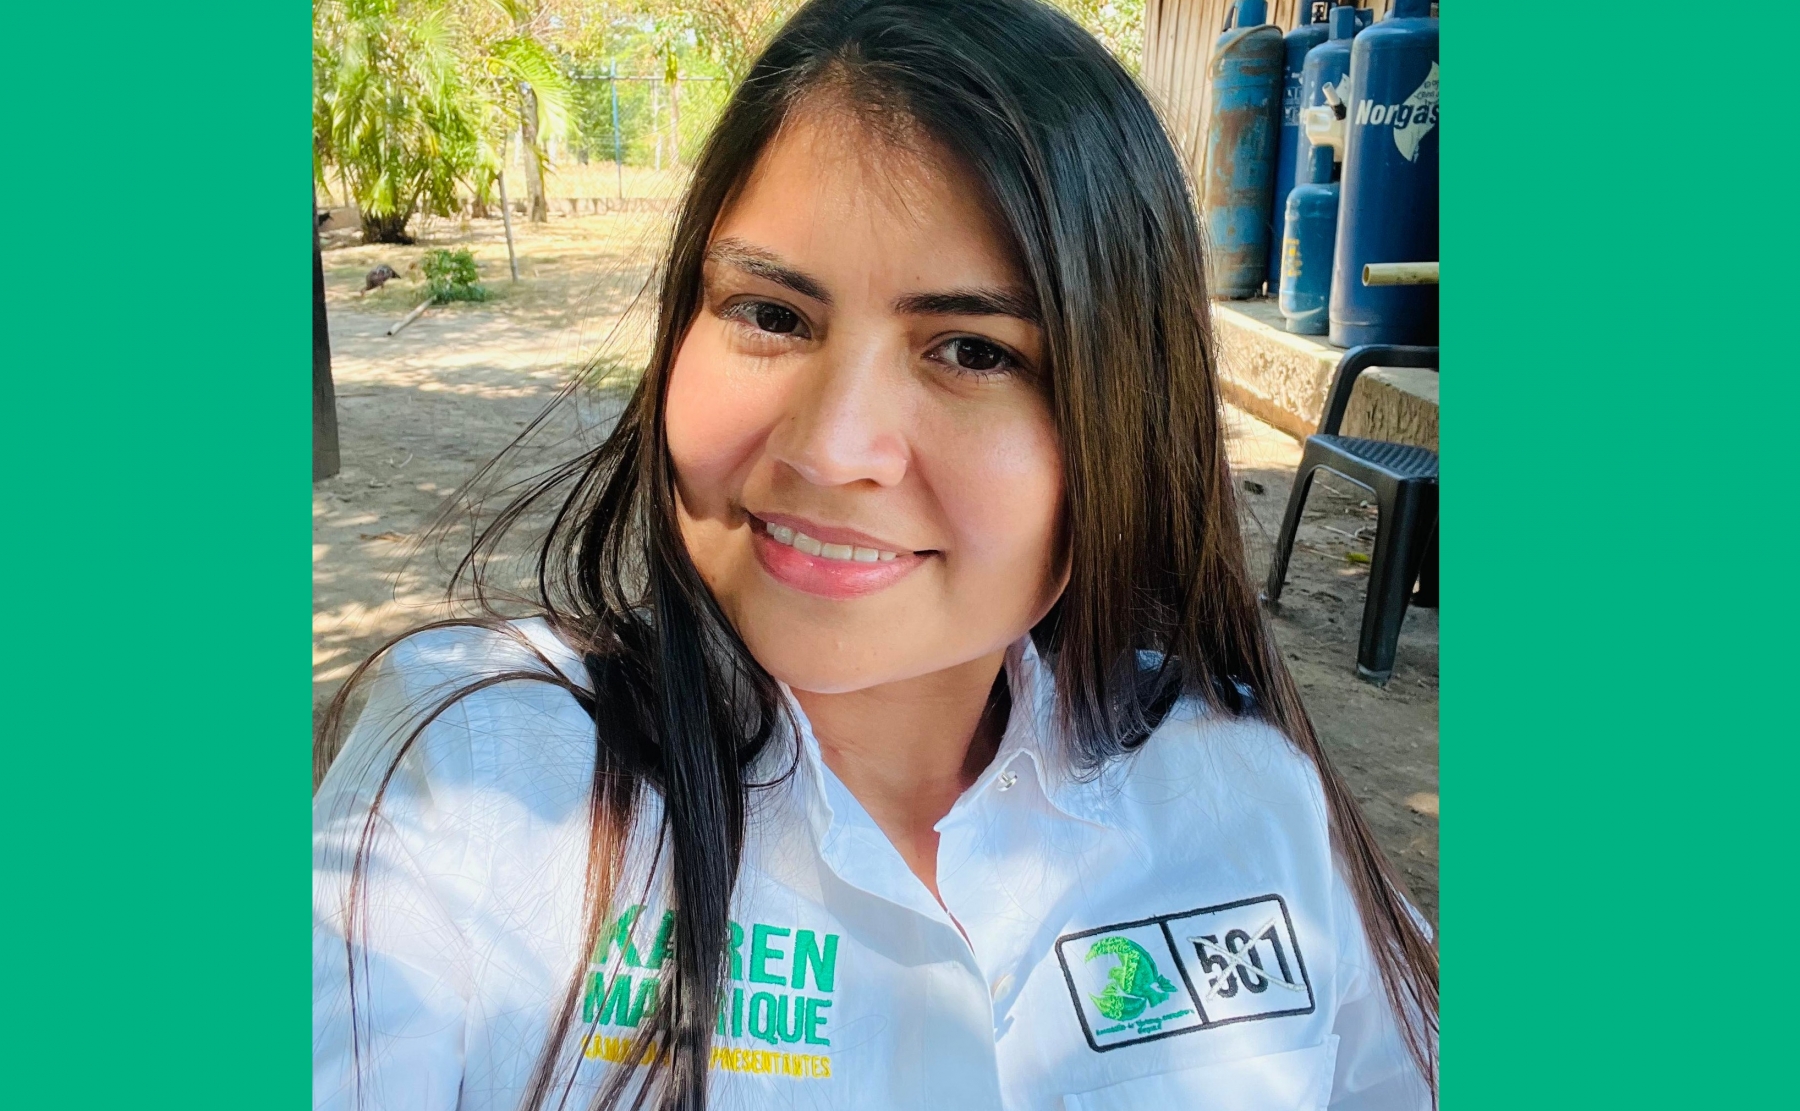  Ponen a ‘tambalear’ credencial de la representante electa por Arauca Karen Manrique